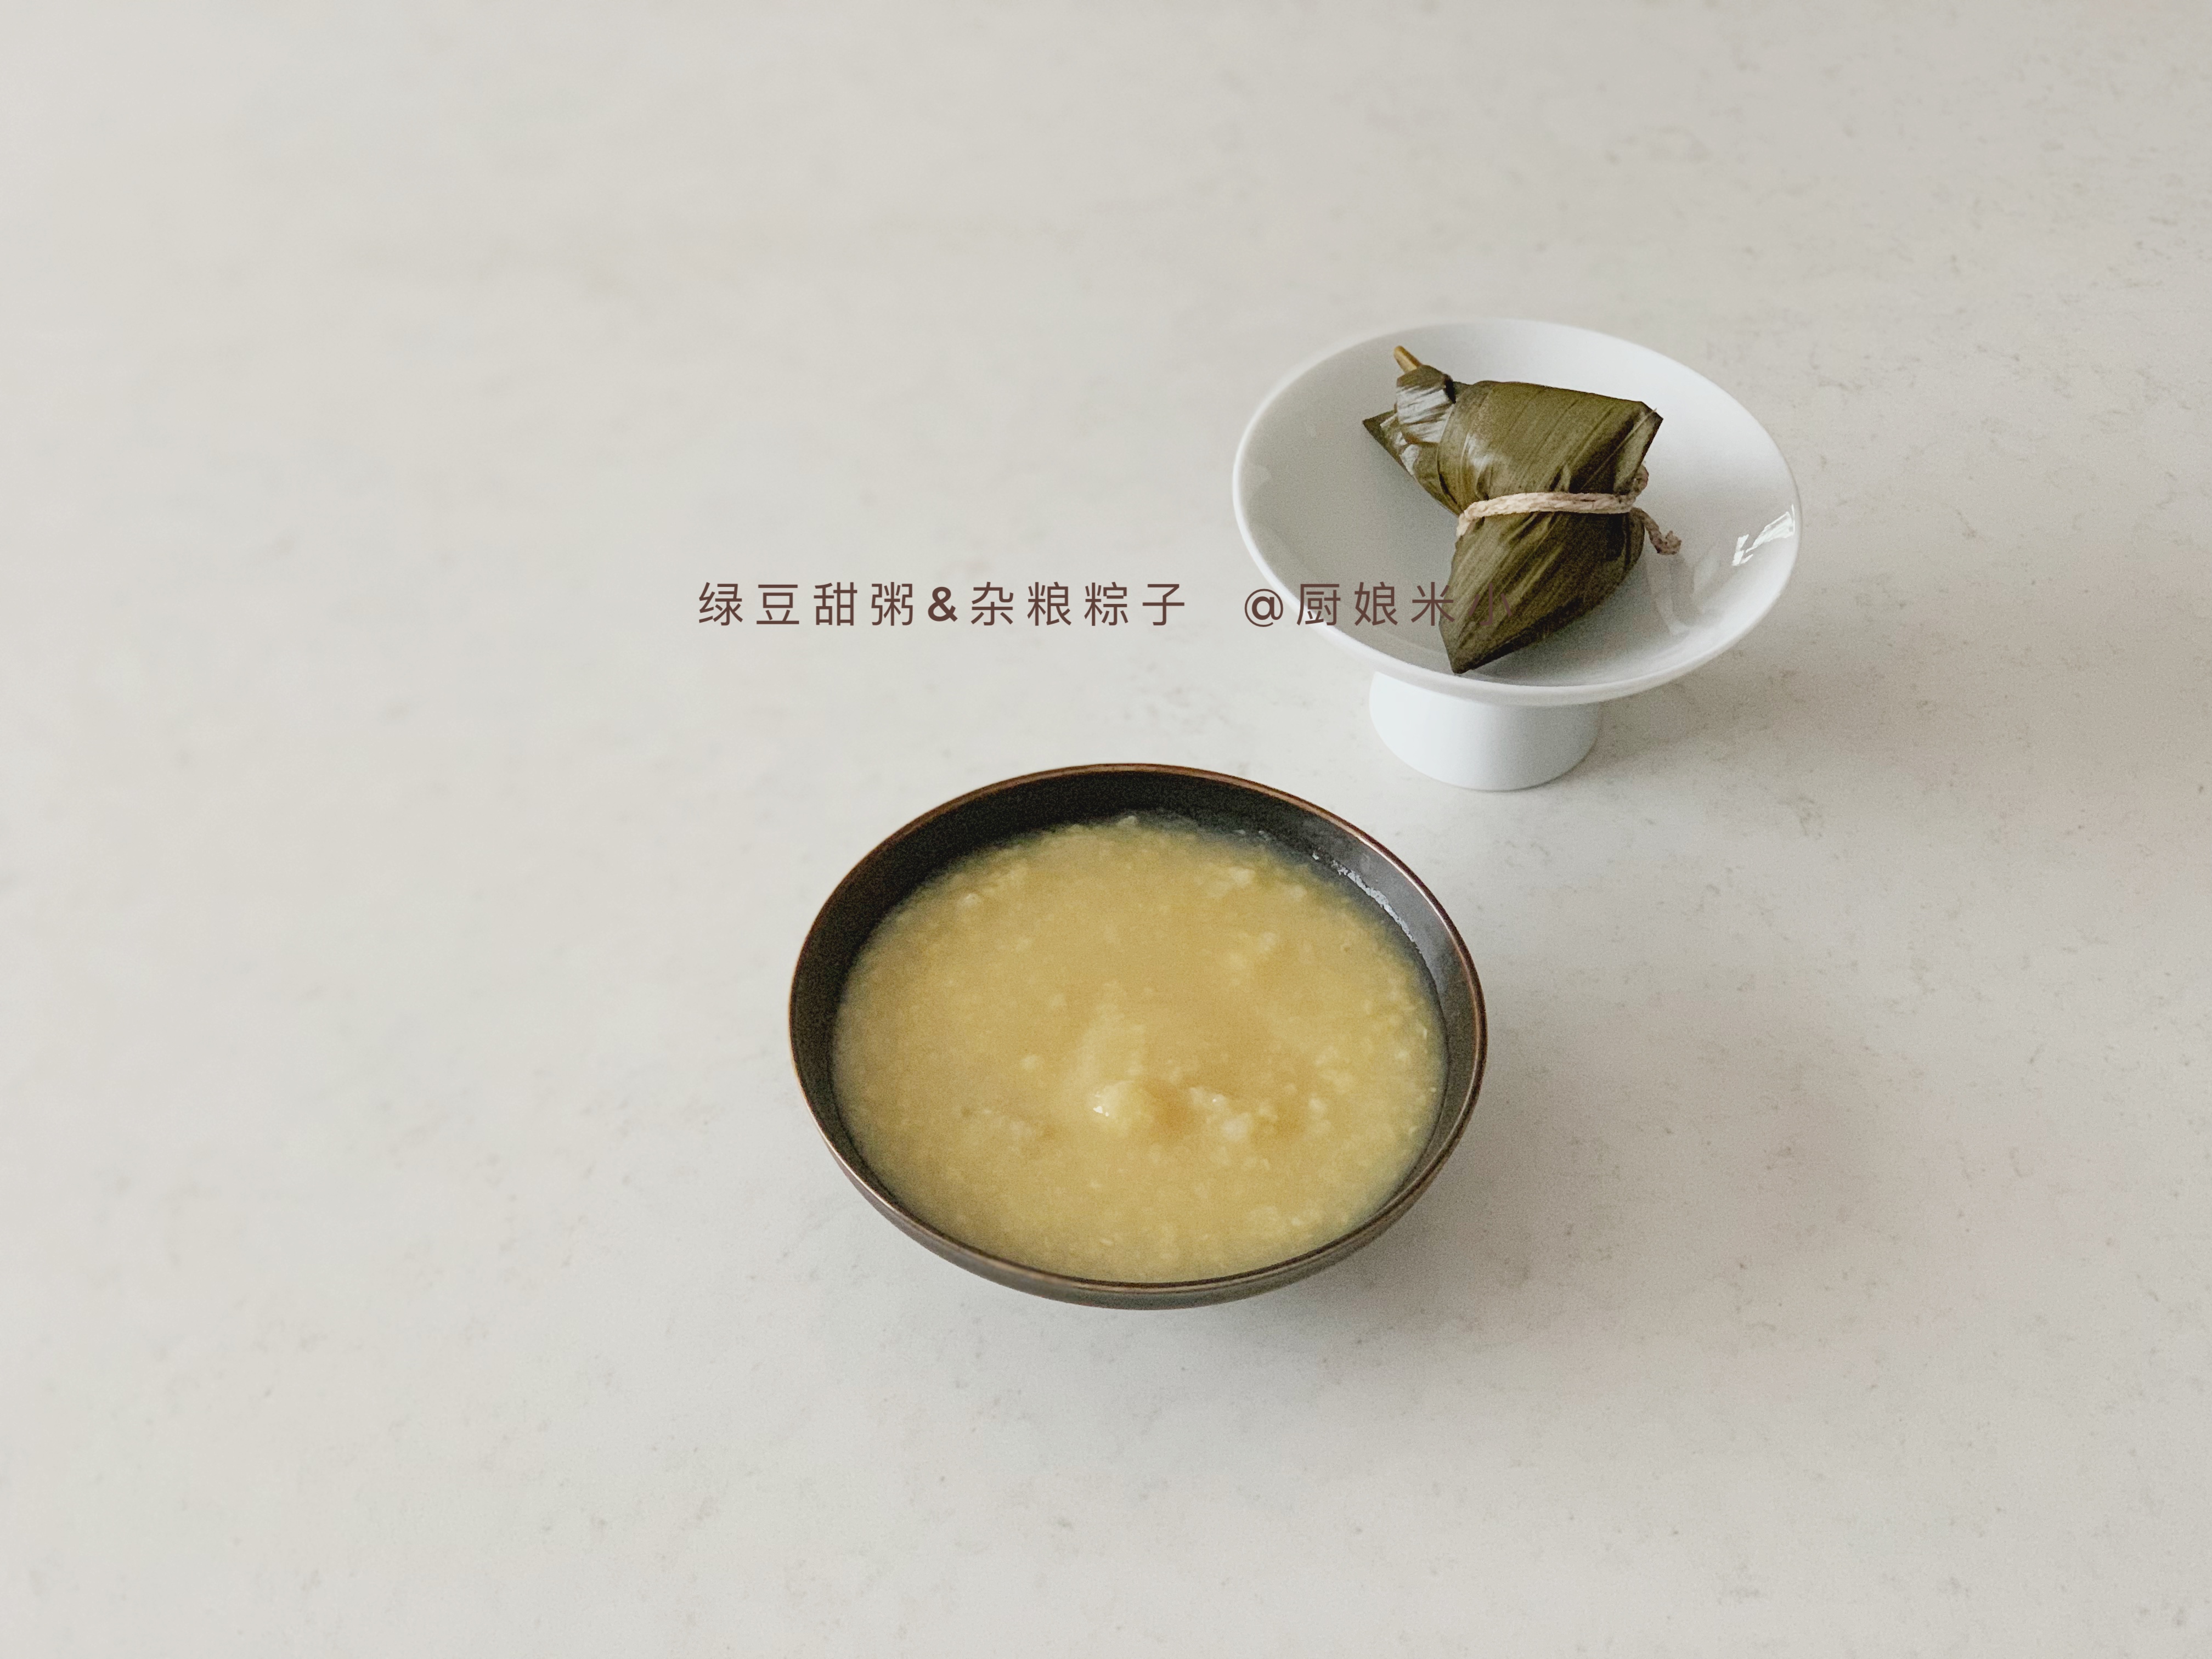 【米小料理】绿豆甜粥&粽子的做法